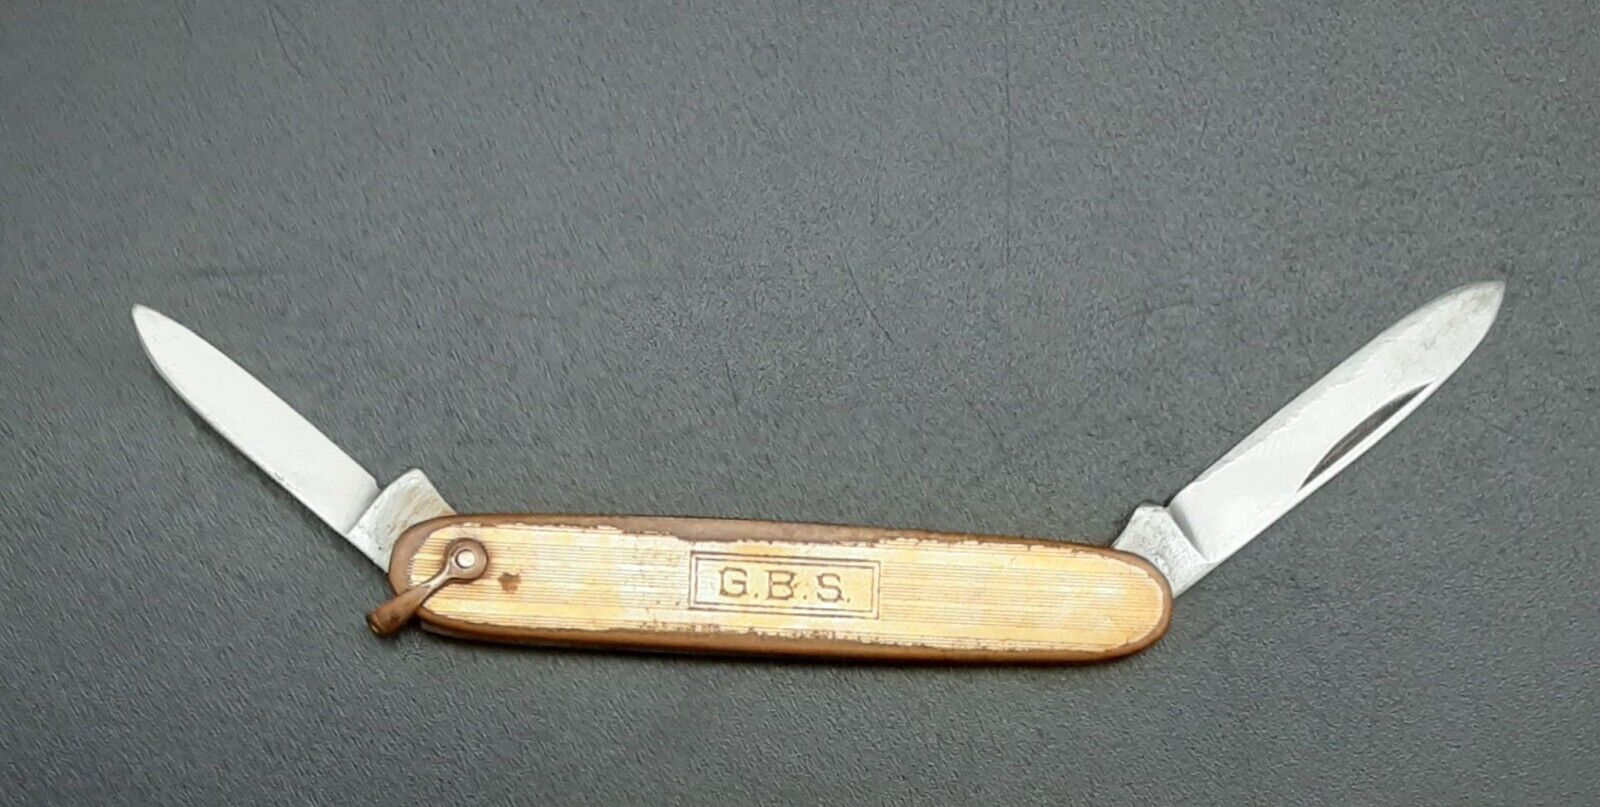 Vintage Gold-Filled VOOS 2 Blade Folding Pocket Knife with “G.B.S.” engraved